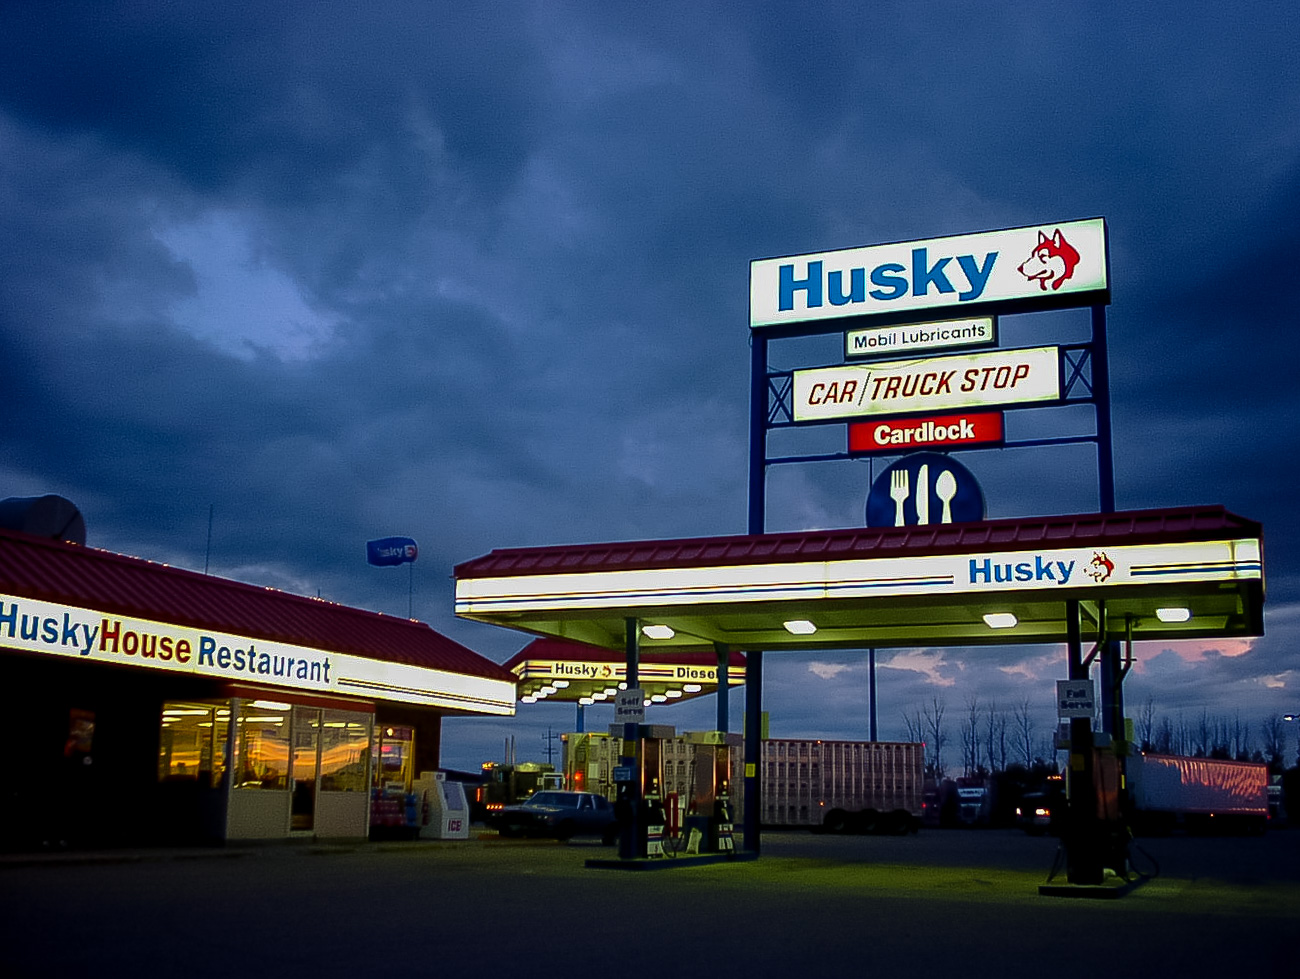 ハスキー犬のロゴが可愛いhuskyガソリンスタンド フリー写真有